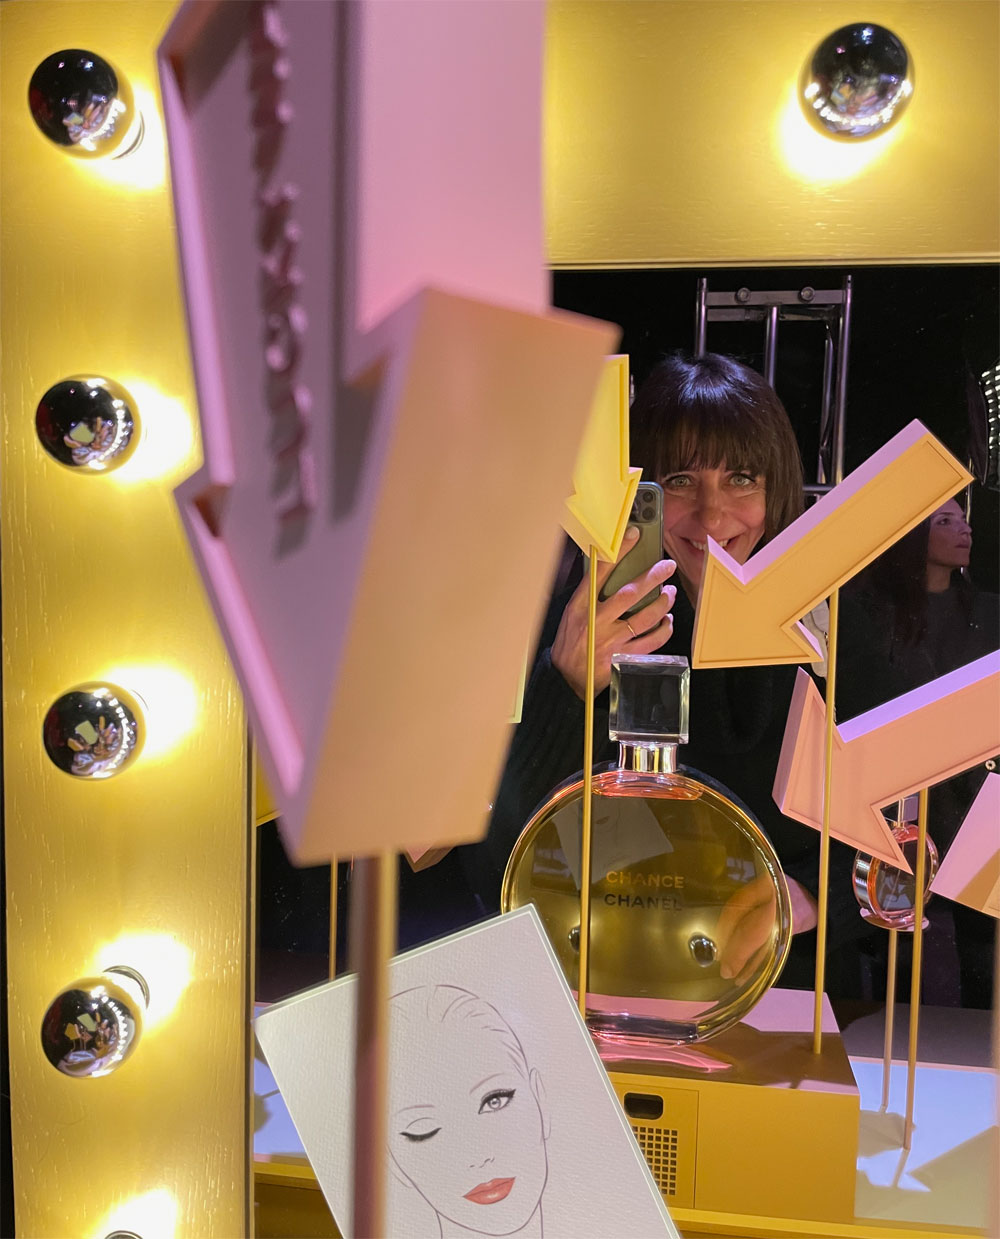 sonrisa war an der exklusiven Vorschau der Ausstellung "Le Grand Numéro Chanel" und hat viele Eindrücke mitgebracht von diesem einzigartigen olfaktorischen Spektakel in Paris. 